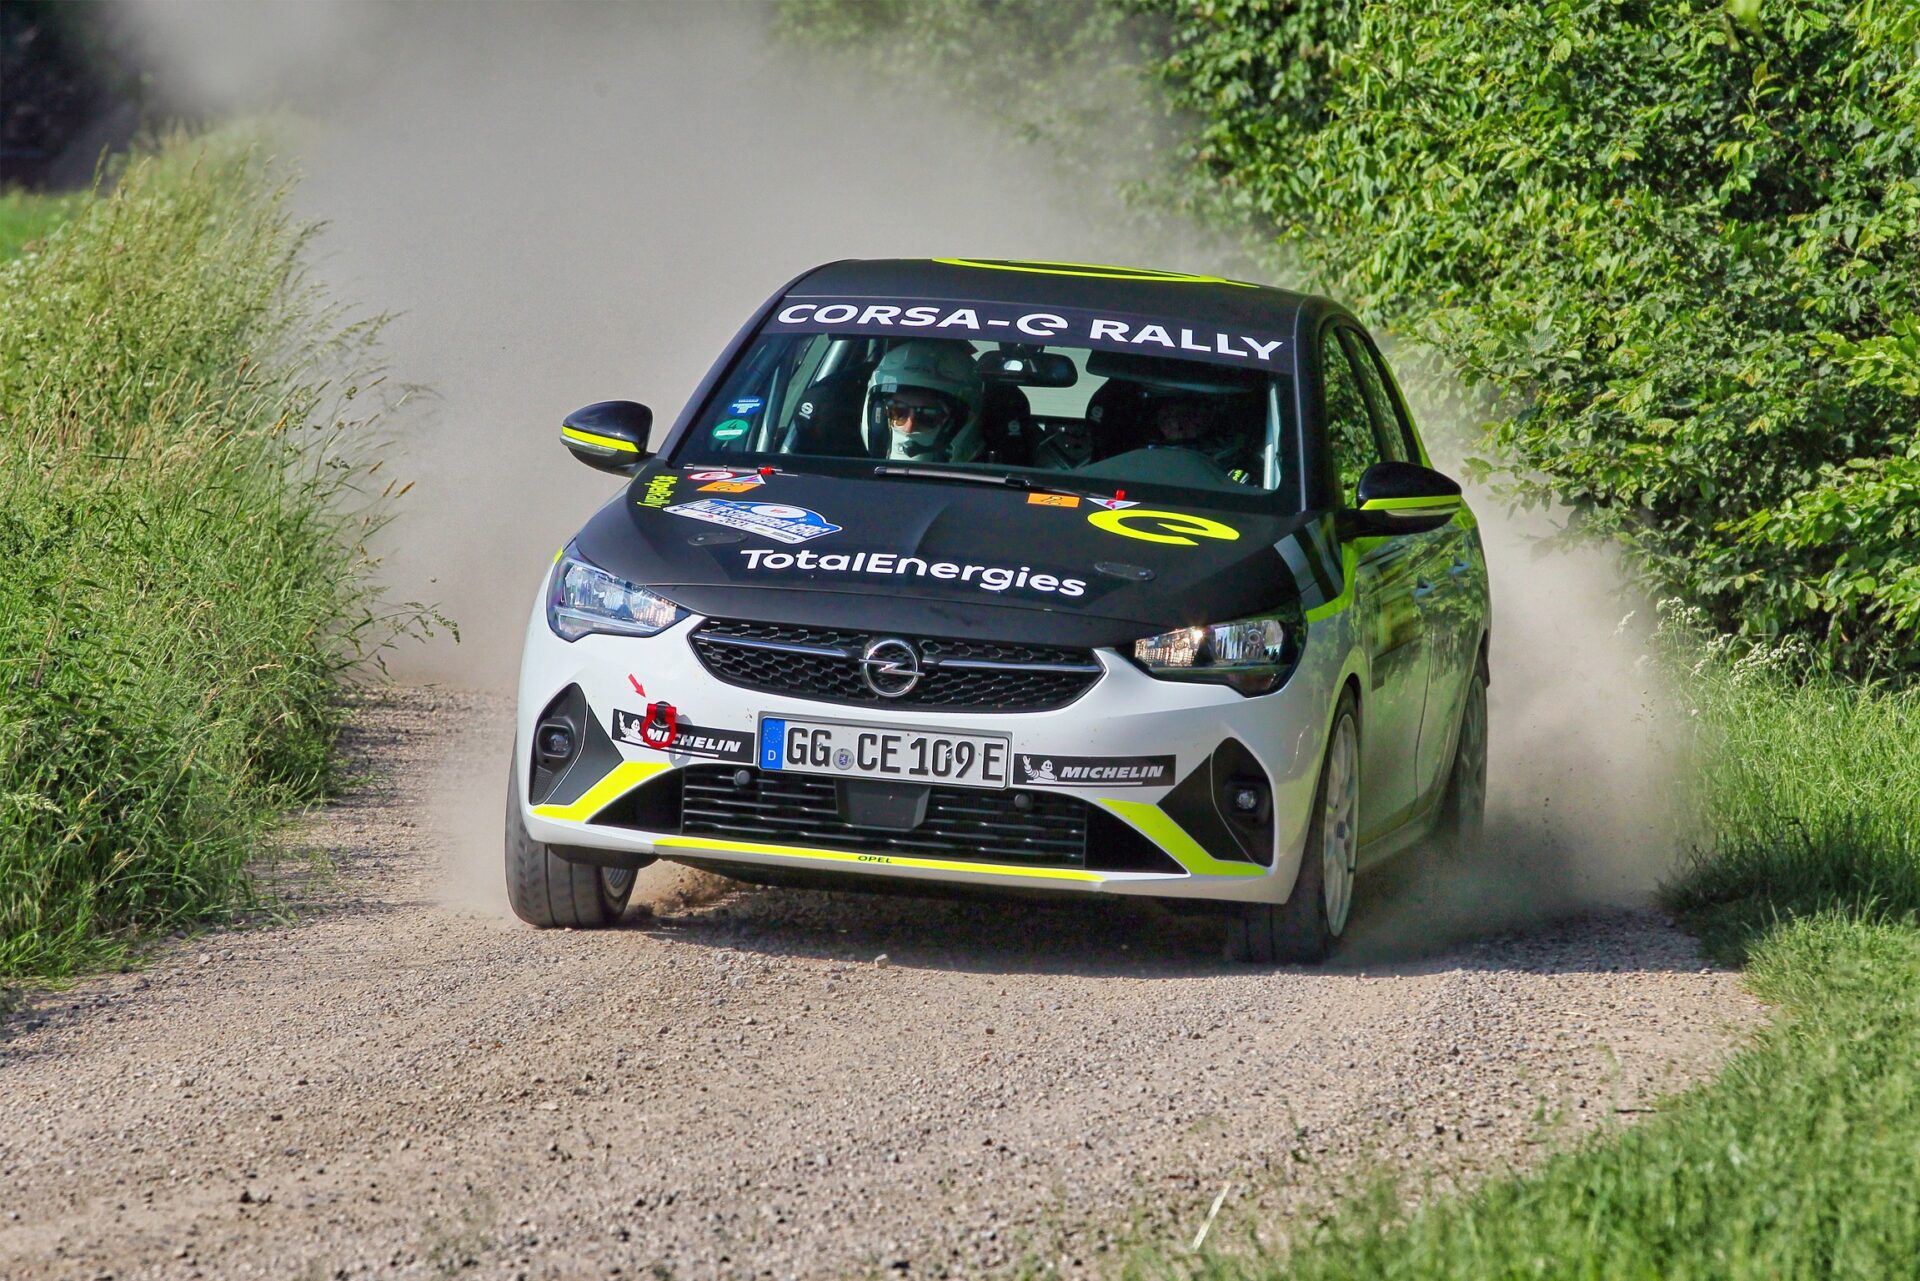 Το Opel Corsa –e Rally σηματοδοτεί τη νέα εποχή στους αγώνες